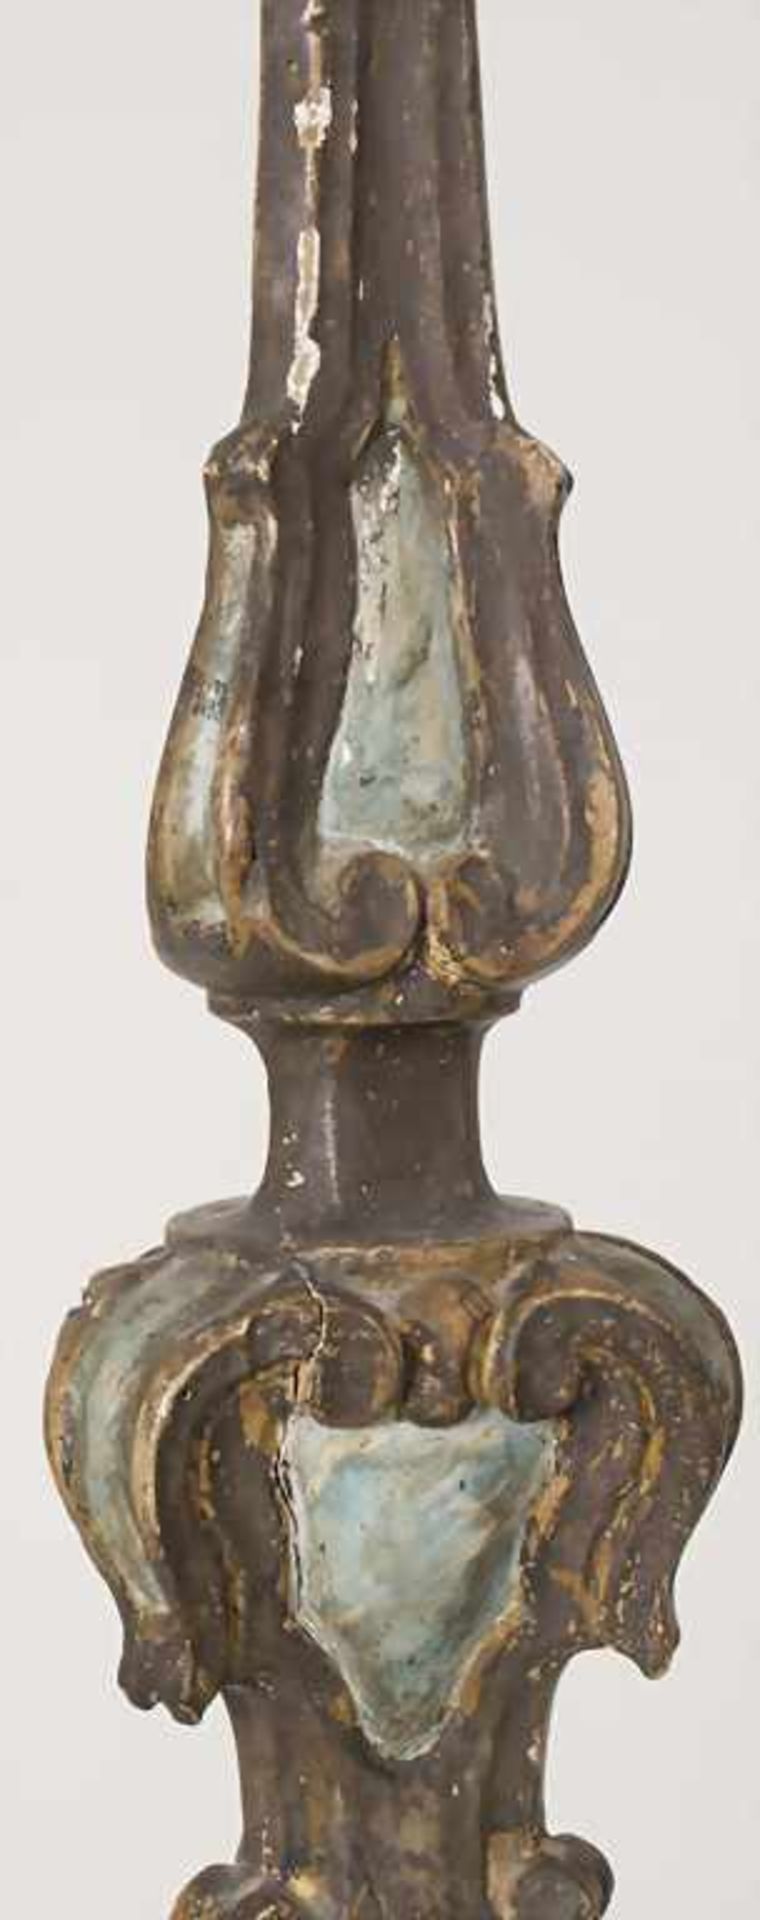 Altarleuchter / An altar candlestick, süddeutsch 18. Jh.Material: Holz, geschnitzt, farbig - Bild 12 aus 13